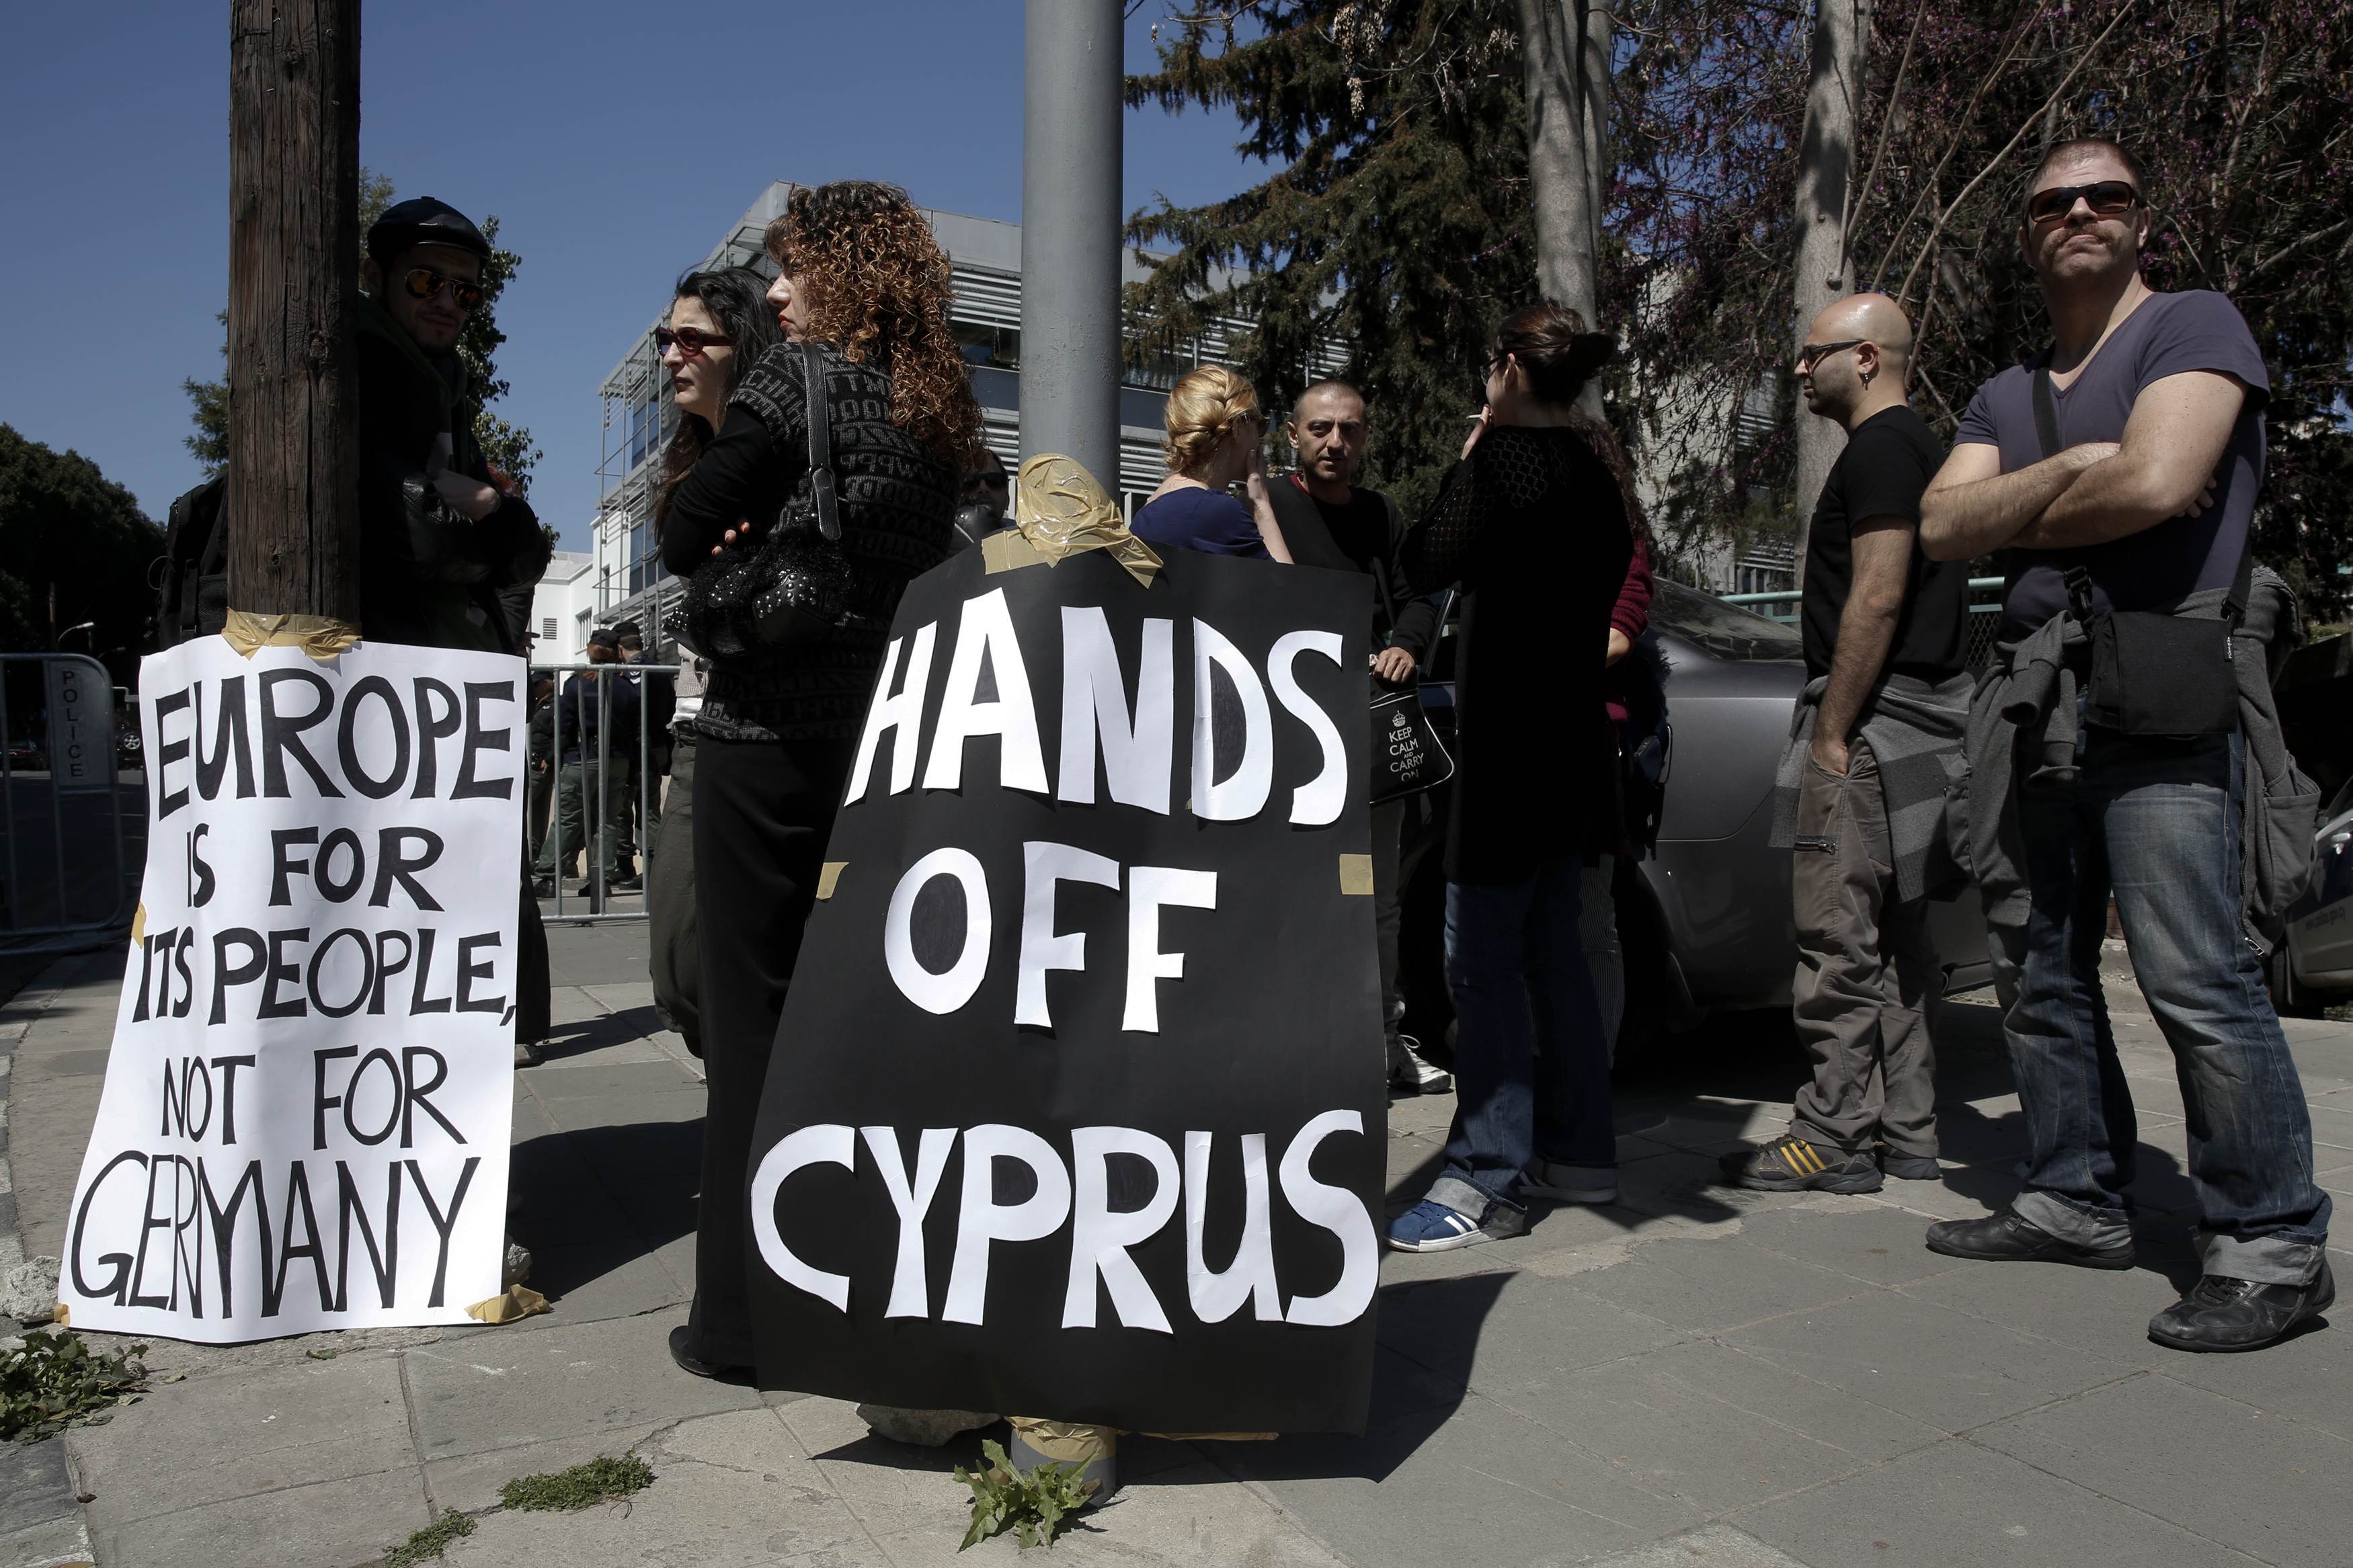 Η Κύπρος λέει όχι στο κούρεμα των καταθέσεων – Θα συνεδριάσει η Βουλή για να επικυρώσει την άρνησή της!